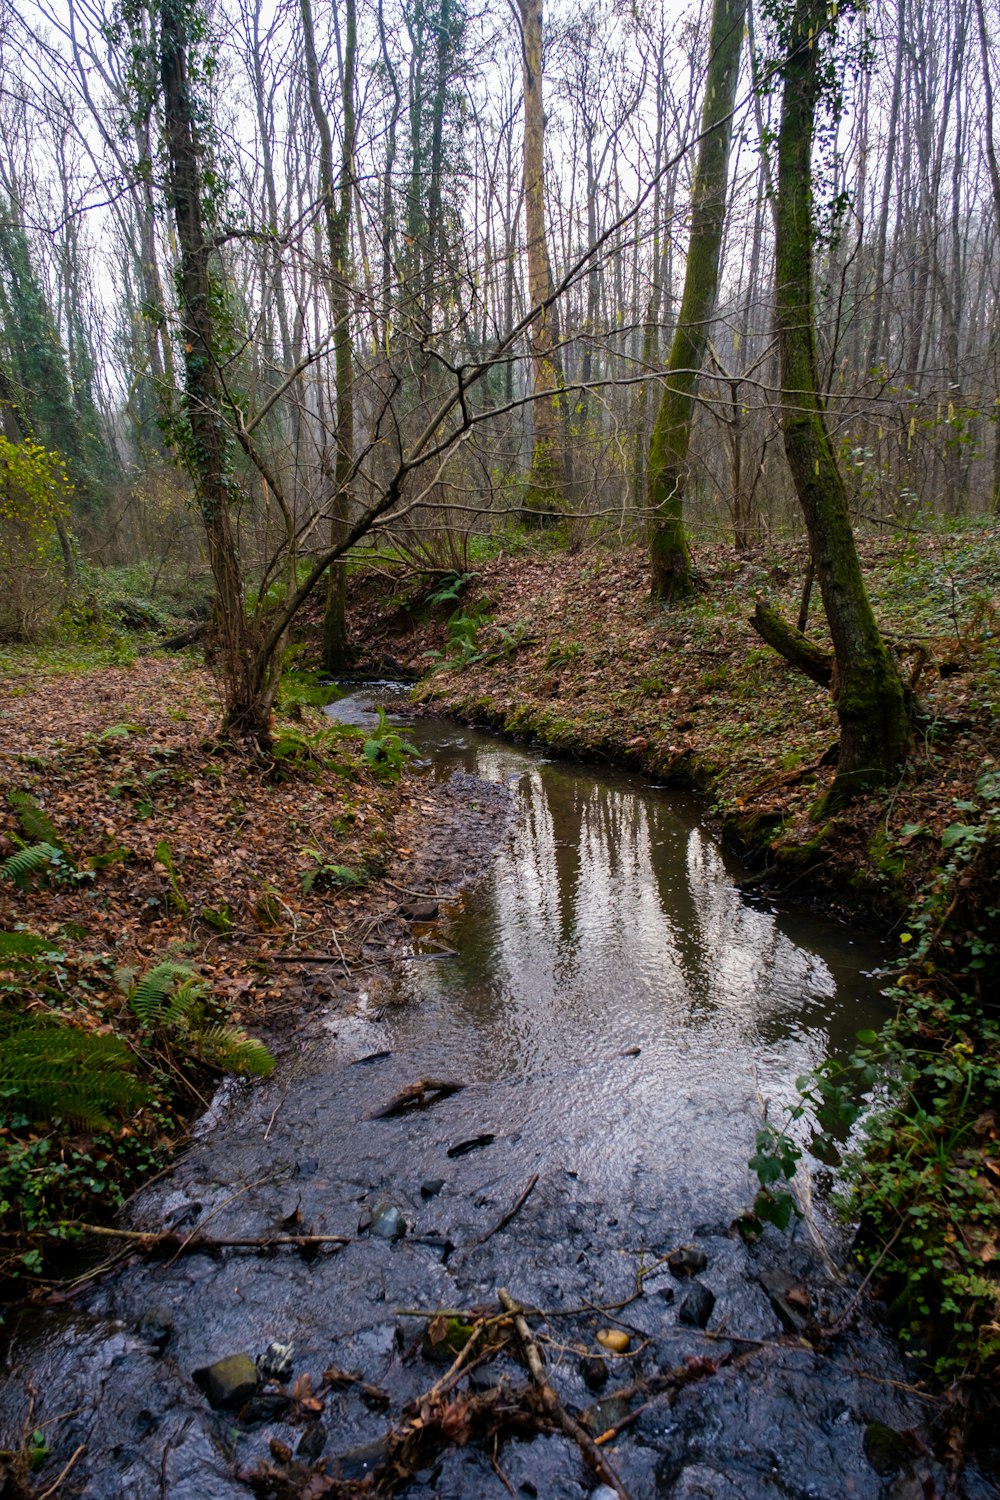 Un pequeño arroyo que atraviesa un bosque lleno de árboles